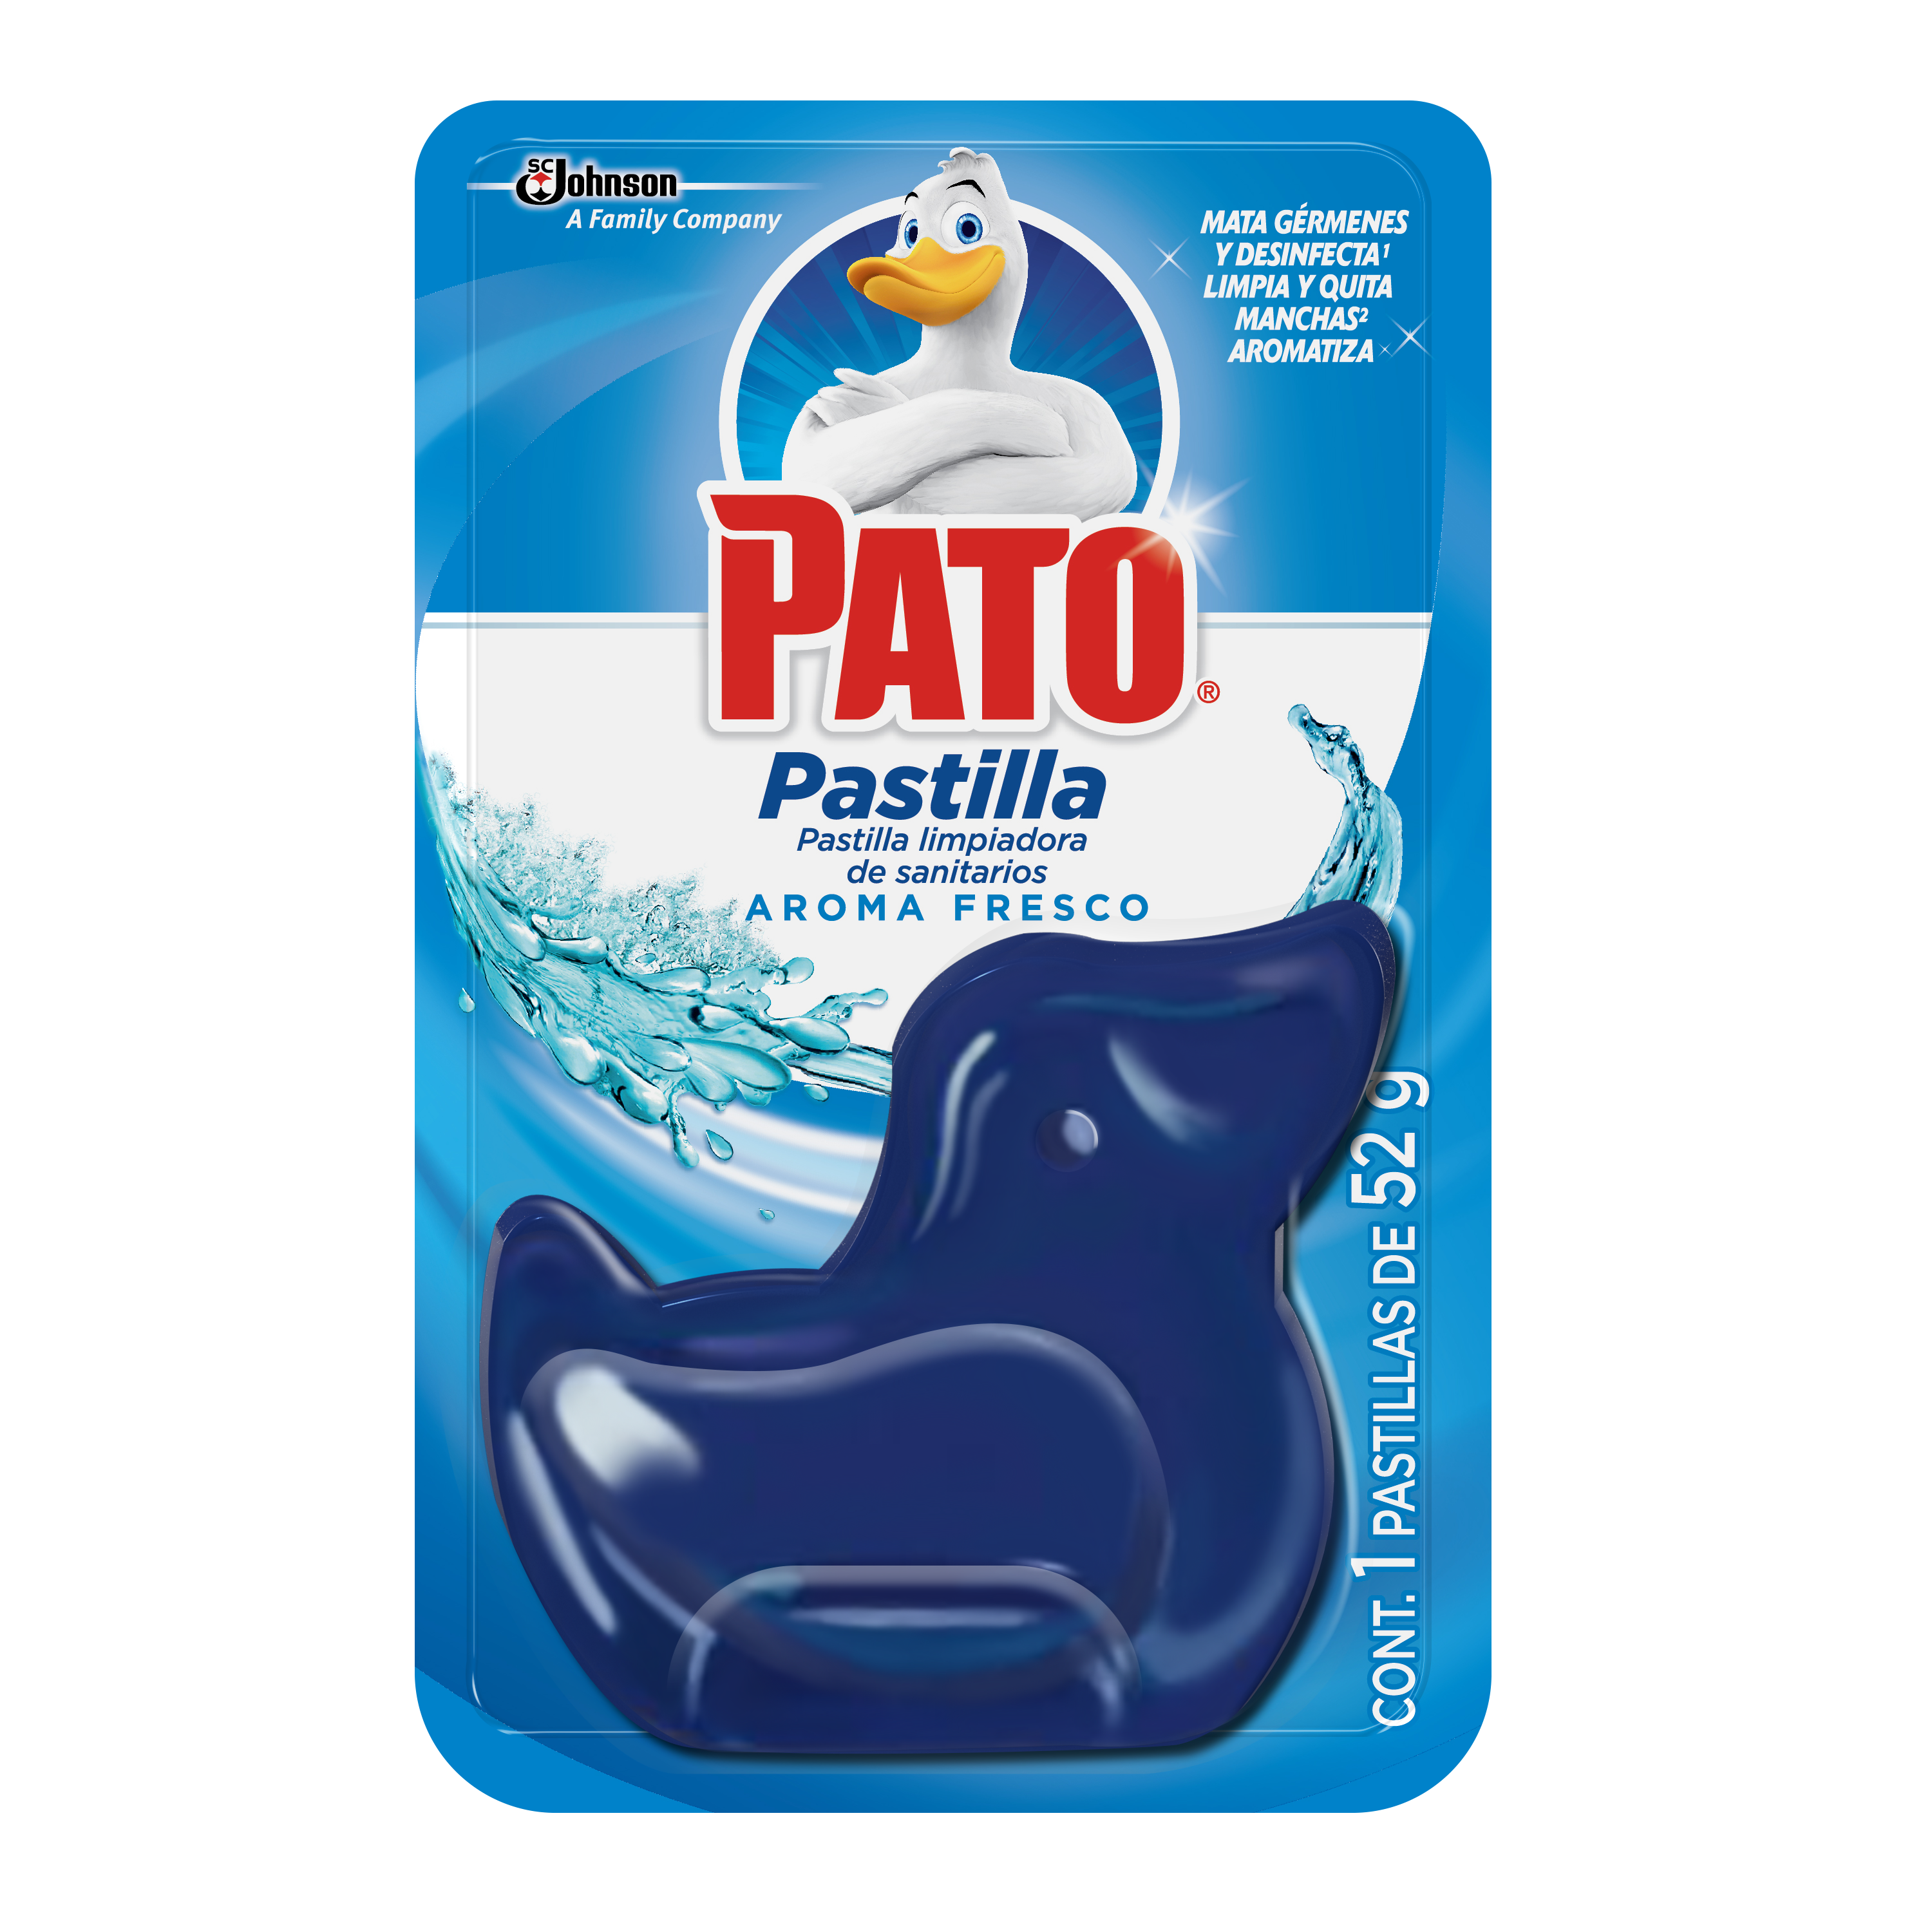 Pato® Pastilla Aroma Fresco